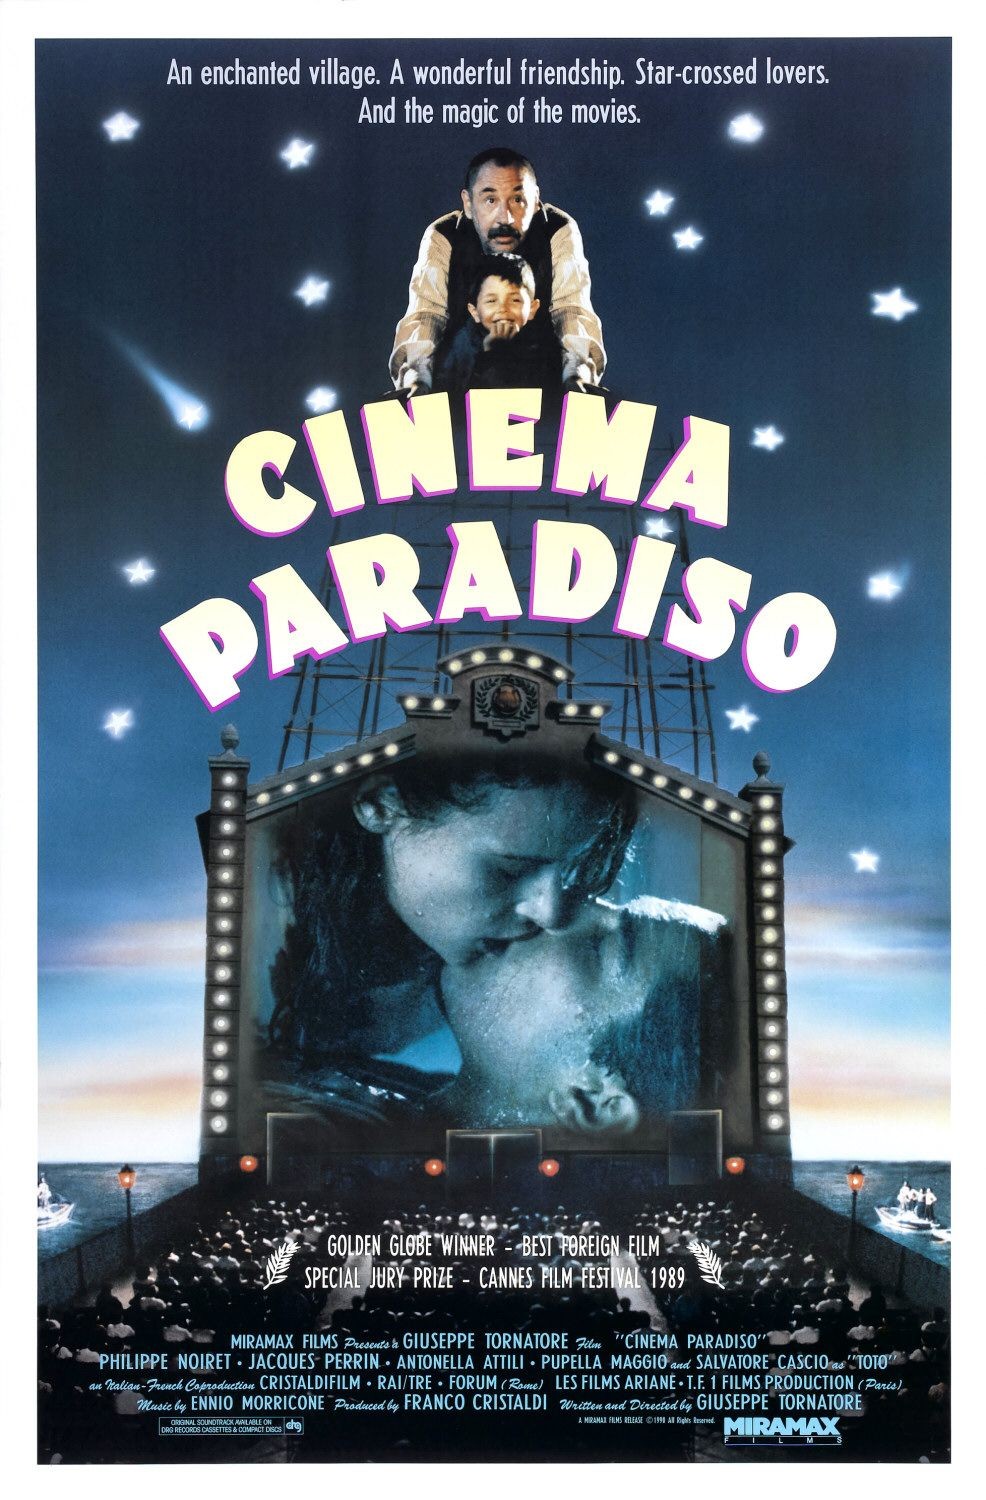 CINEMA PARADISO [Nuovo Cinema Paradiso]